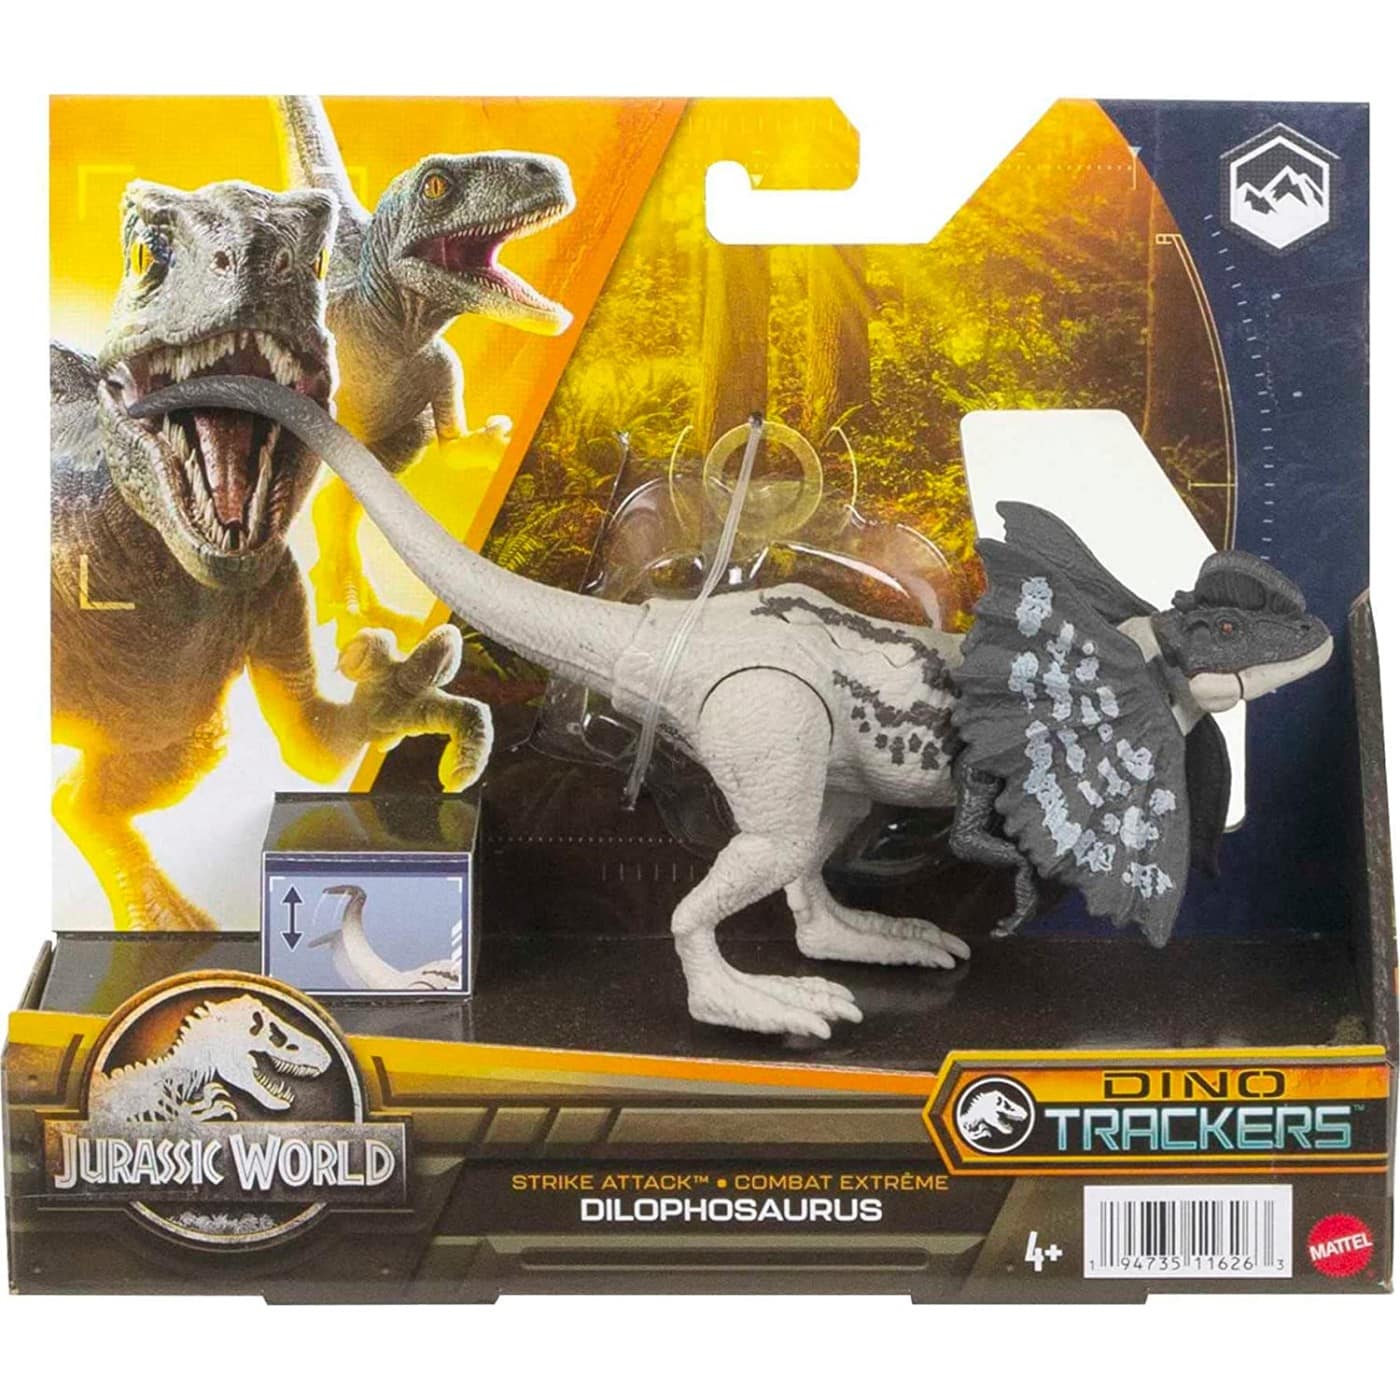 Mattel Jurassic World Strike Attack Dinosaur Toy Dilophosaurus Νεες Φιγουρες Δεινοσαυρων Με Σπαστα Μελη